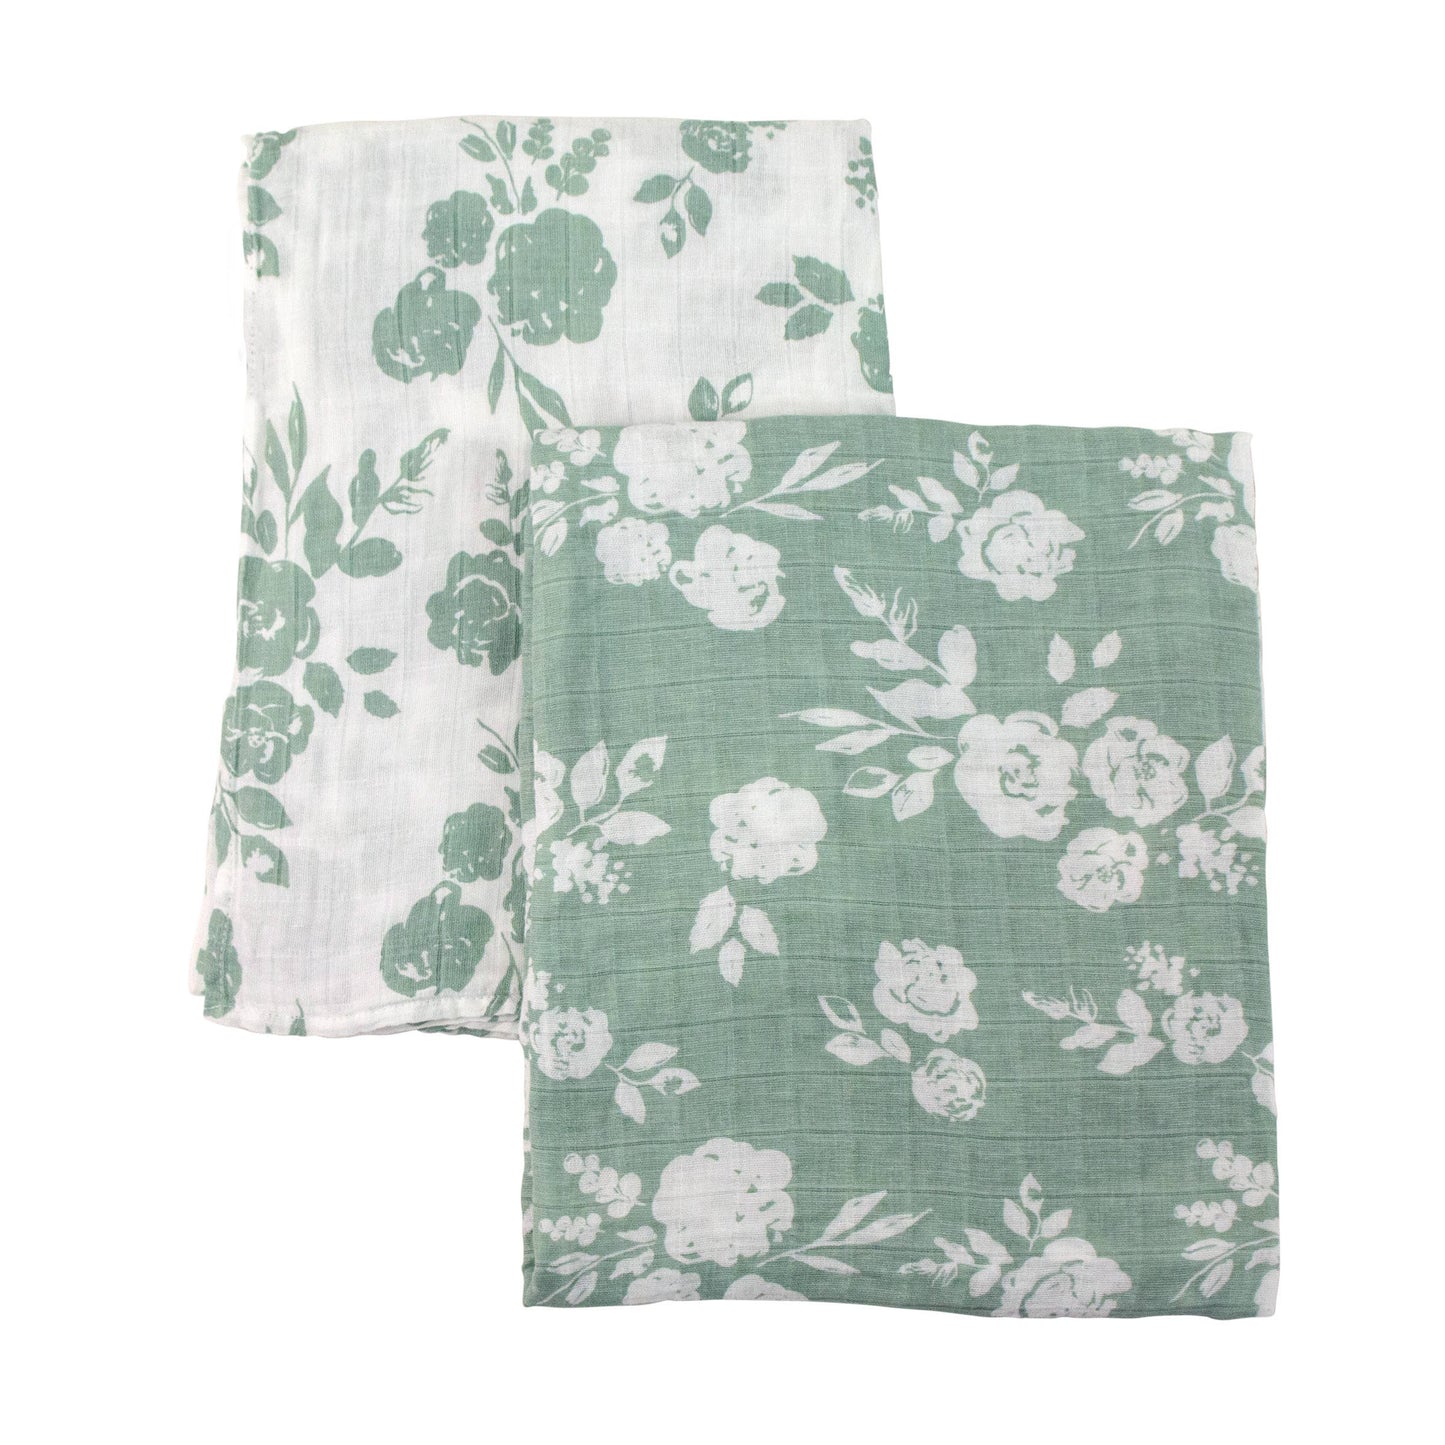 Vintage + Modern Floral Classic Muslin Swaddle Blanket Set